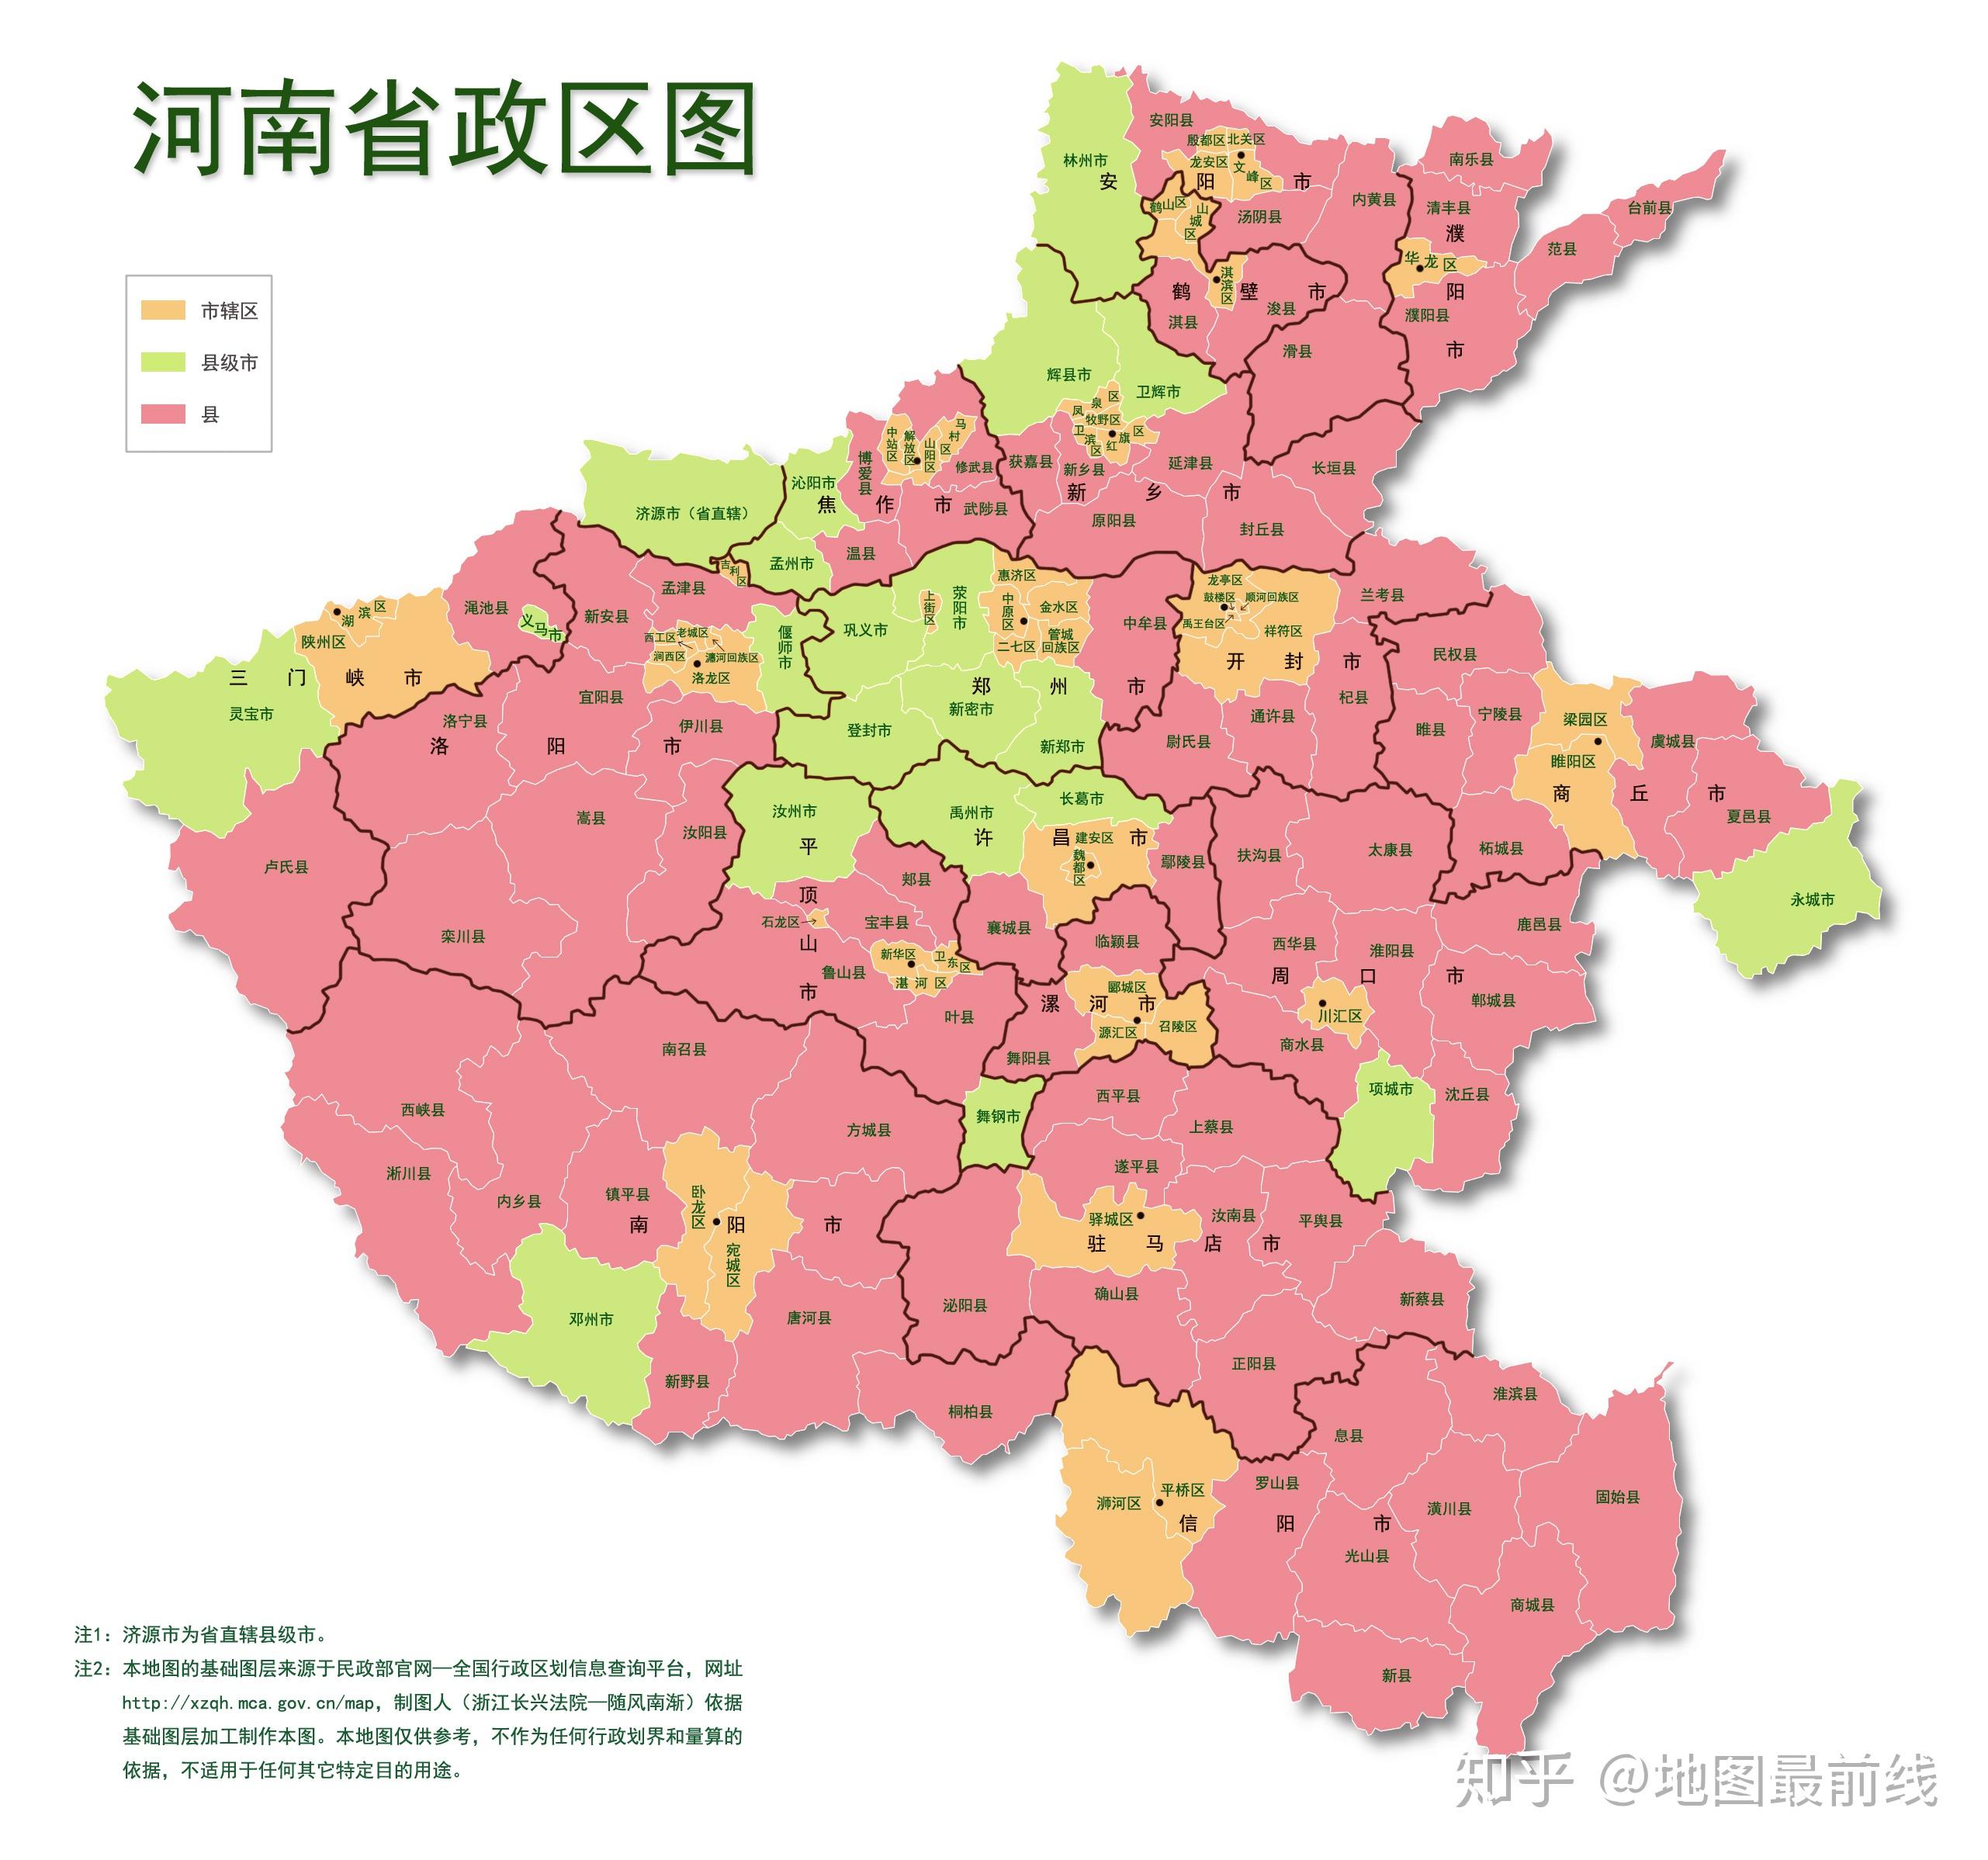 辽宁省县级分界图 - 辽宁省地图 - 地理教师网